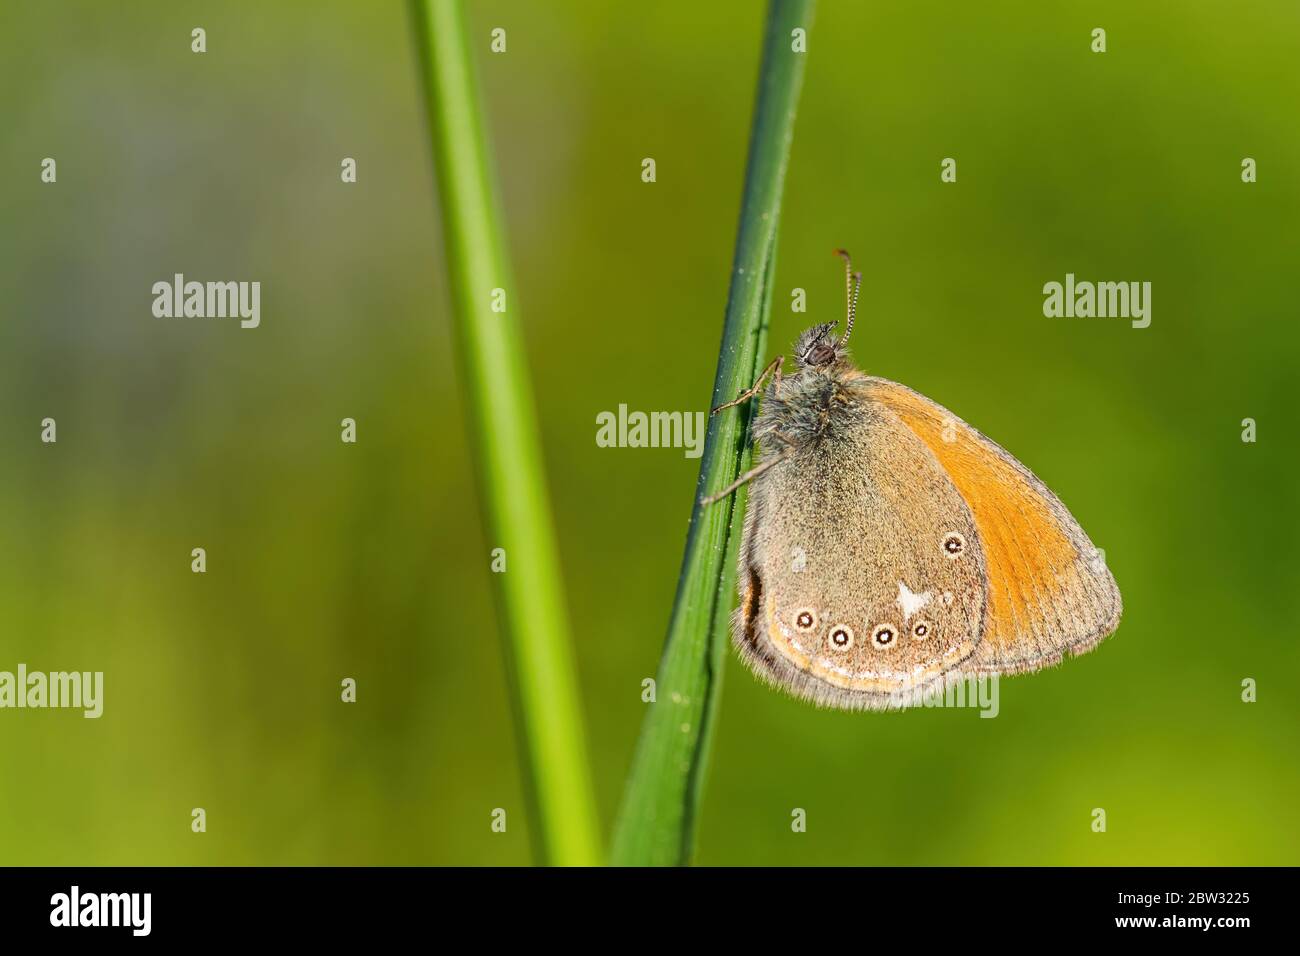 Castagno di Tugnole - Coenonympha glicerion, piccola farfalla nascosta da praterie e prati europei, Zlin, Repubblica Ceca. Foto Stock